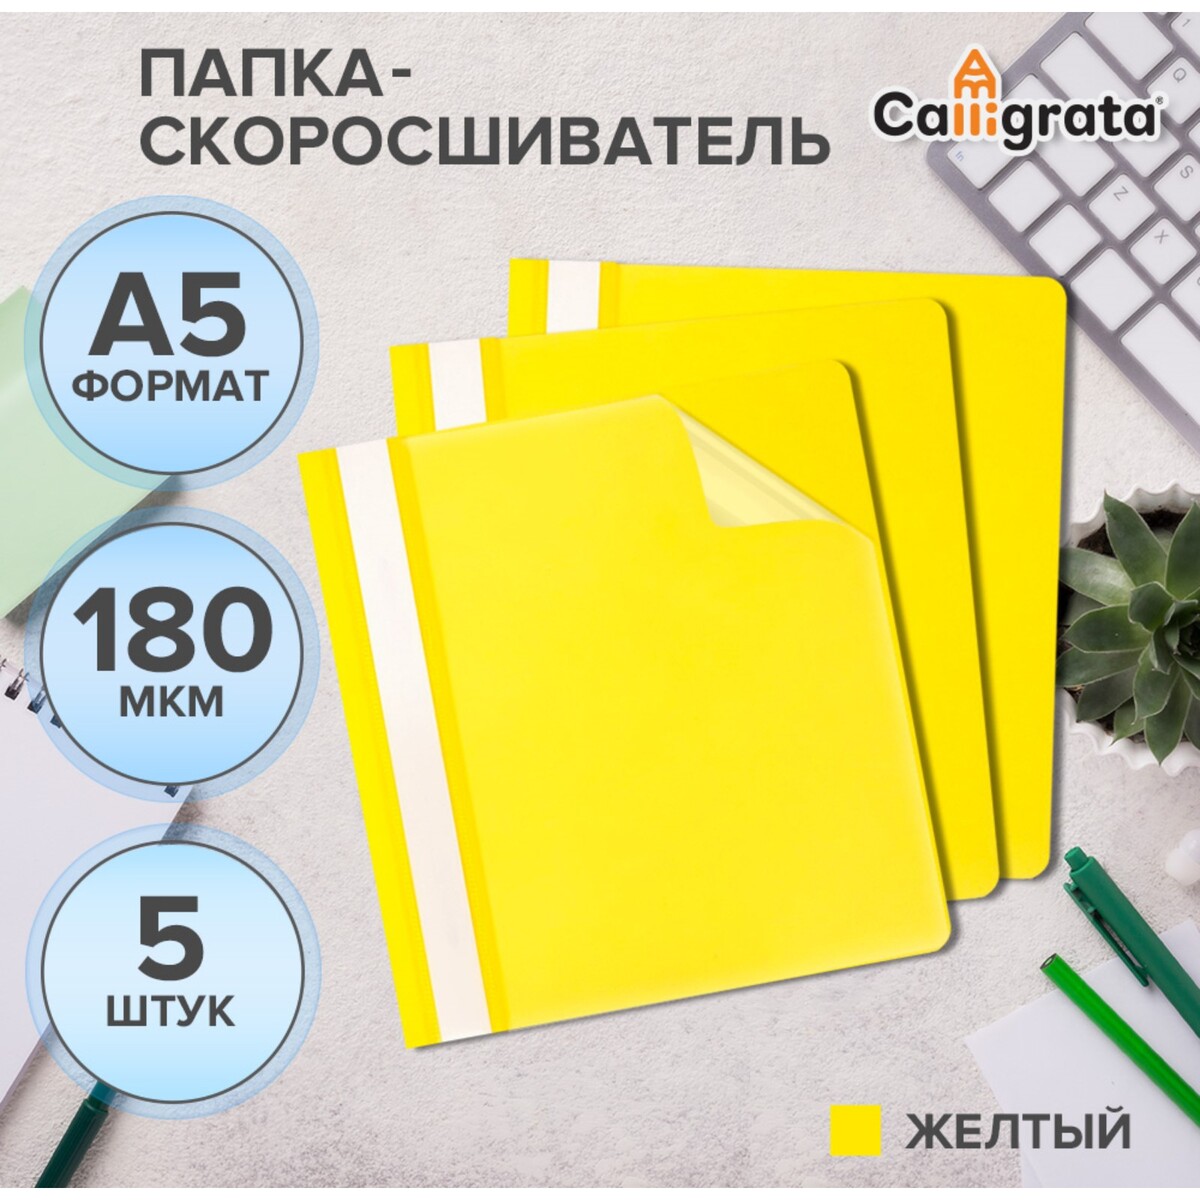 Набор папок-скоросшивателей 5шт. calligrata, а5, 180мкм, с желтым прозрачным верхом Calligrata